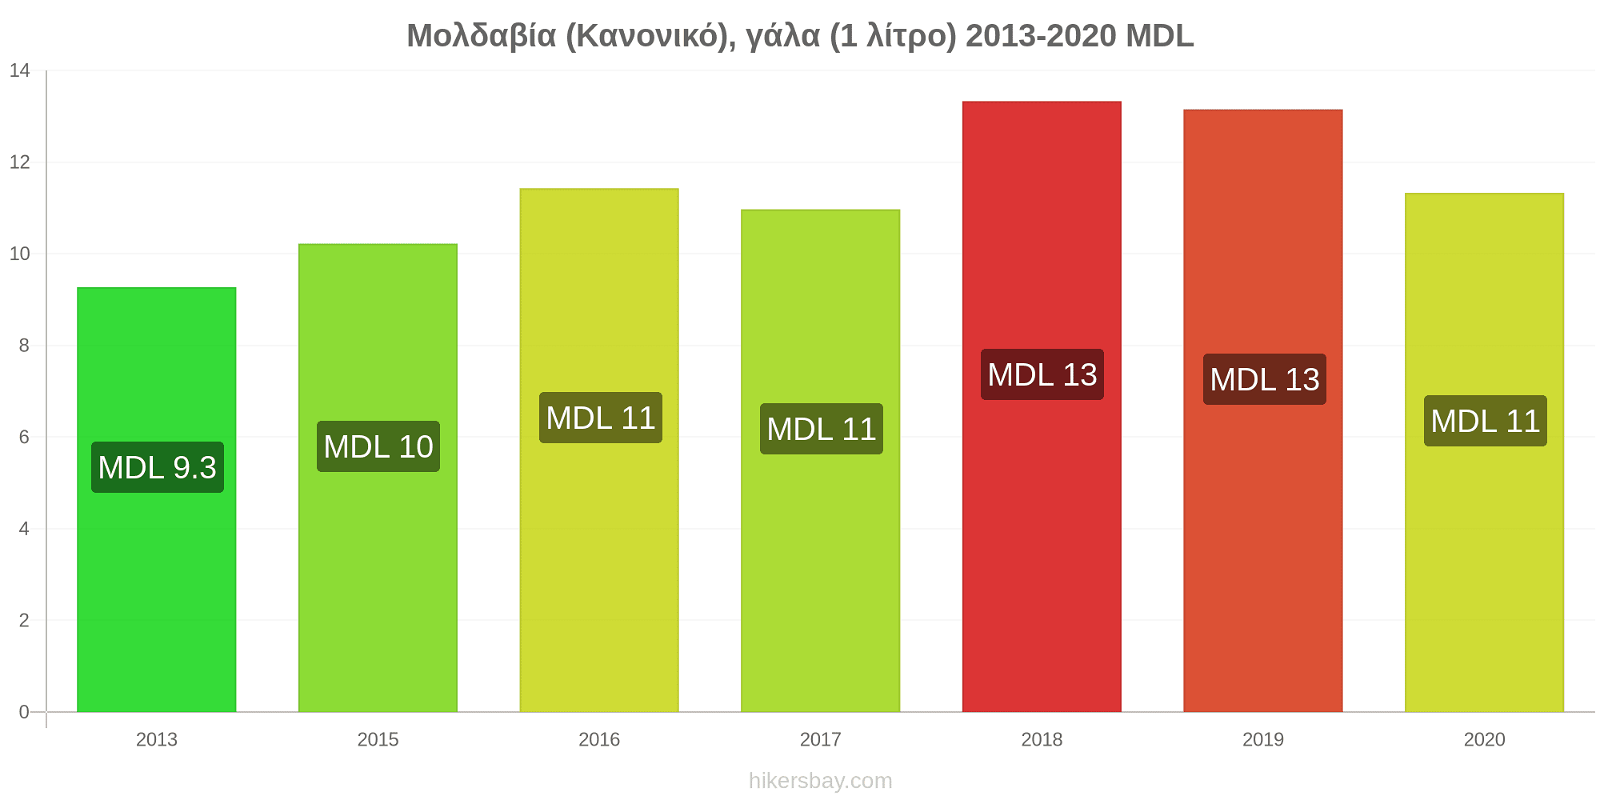 Μολδαβία αλλαγές τιμών (Κανονικό), γάλα (1 λίτρο) hikersbay.com